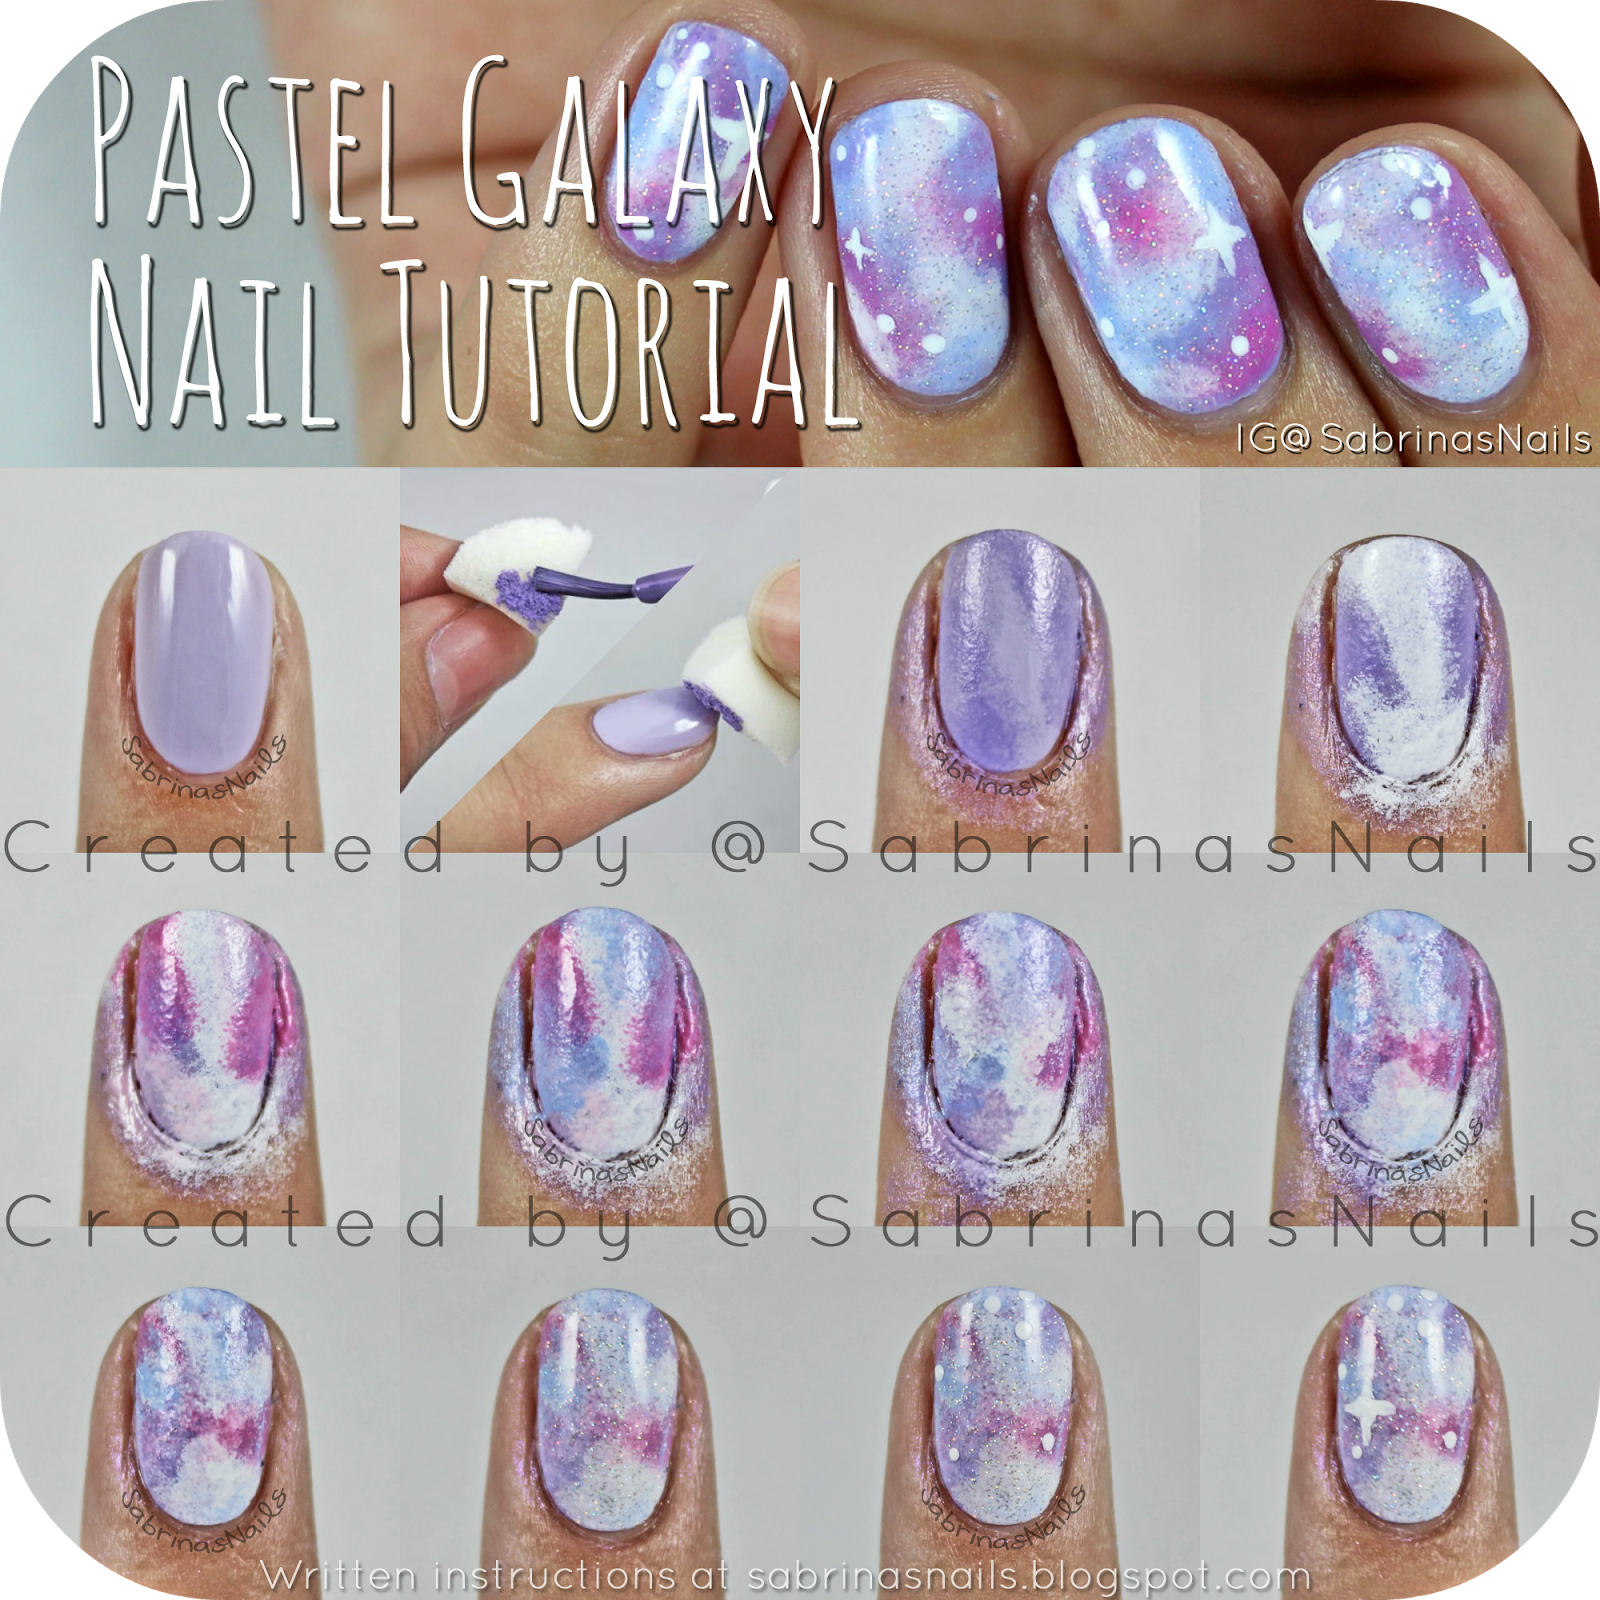 Sabrinas Nails: Pastel Galaxy Nail Tutorial